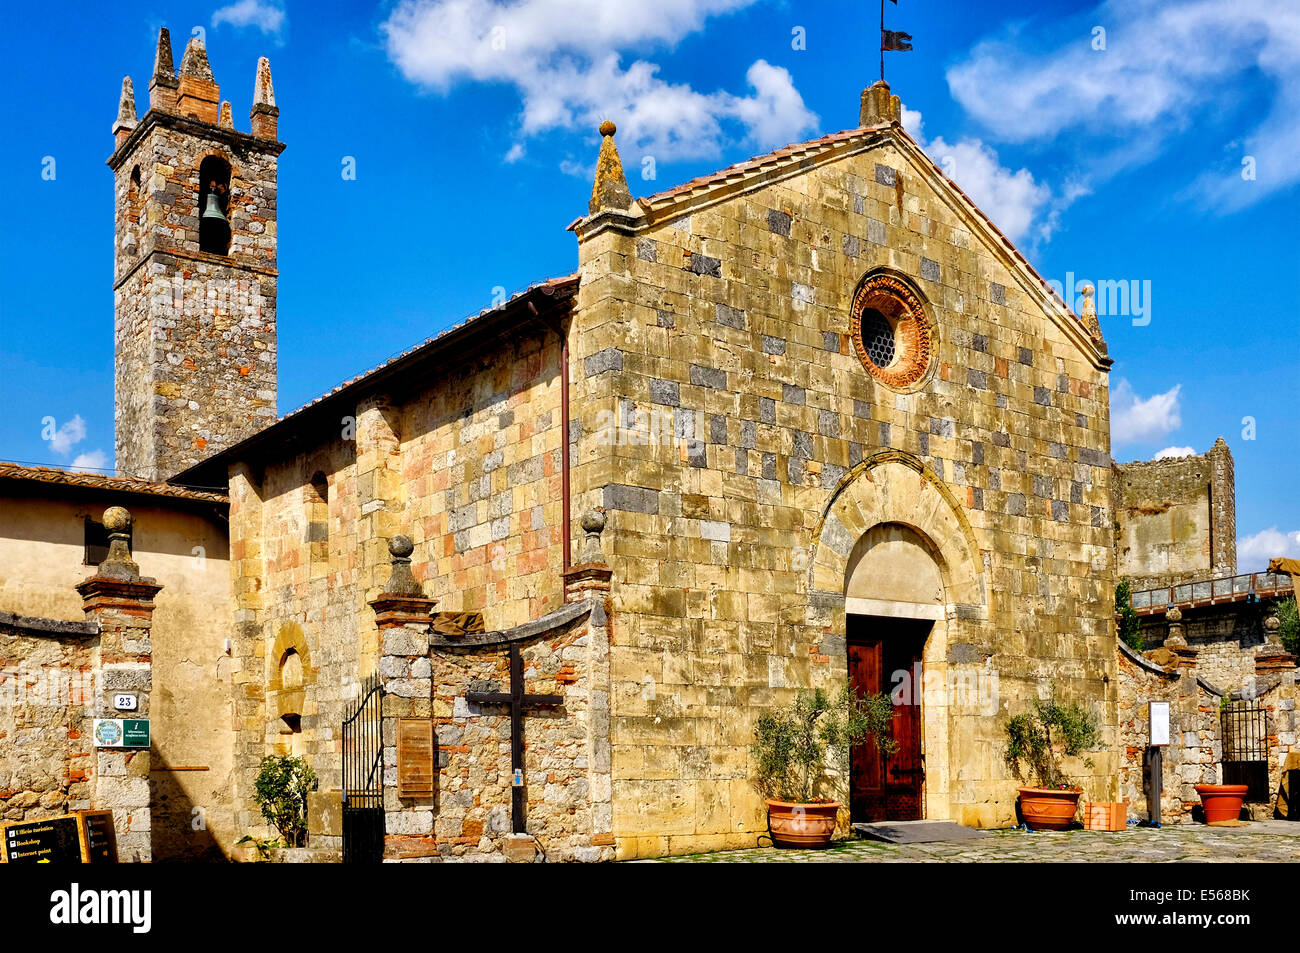 Chiesa di Santa Maria Assunta, Monteriggioni, Italy Stock Photo